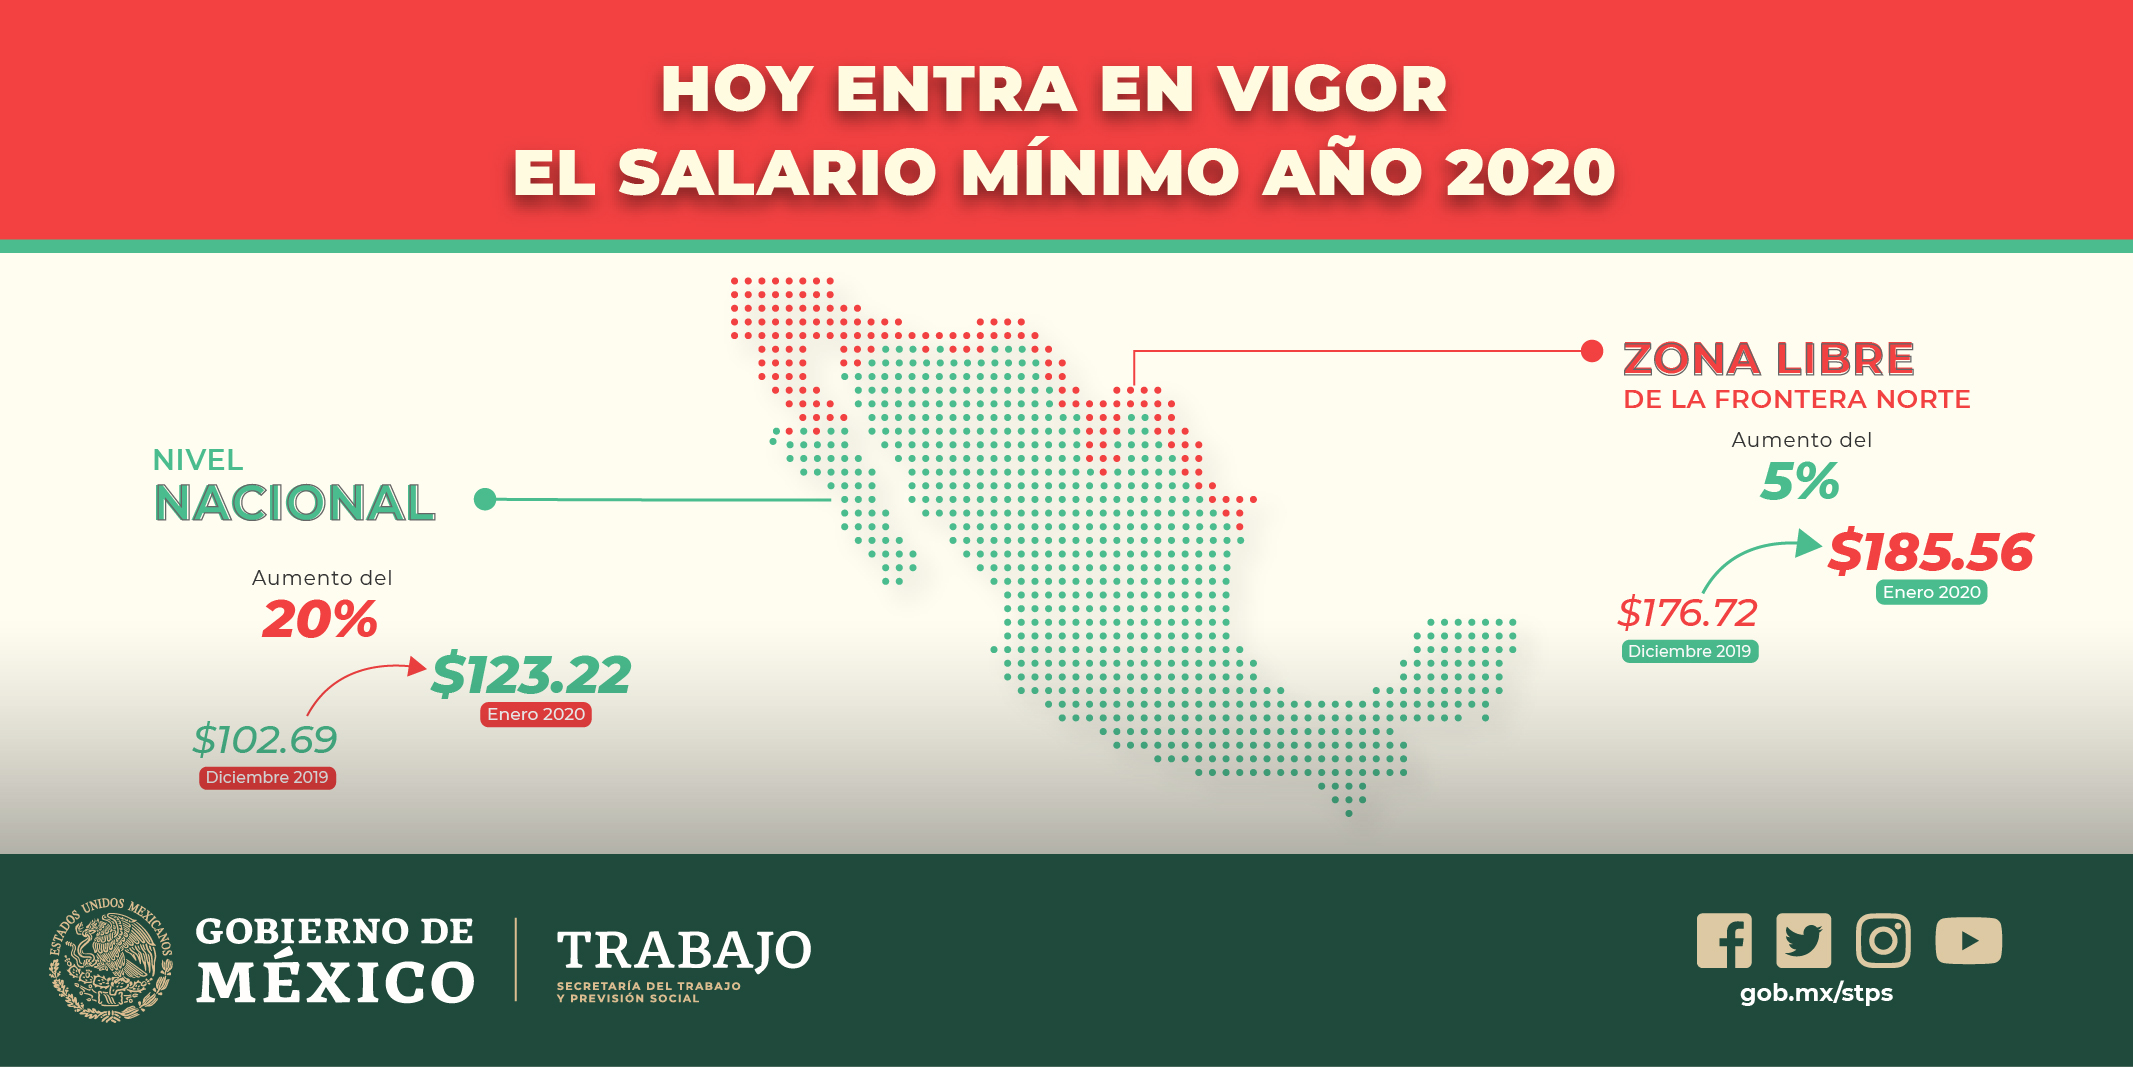 México tiende bases para el crecimiento con el aumento 
de 20% al salario mínimo
